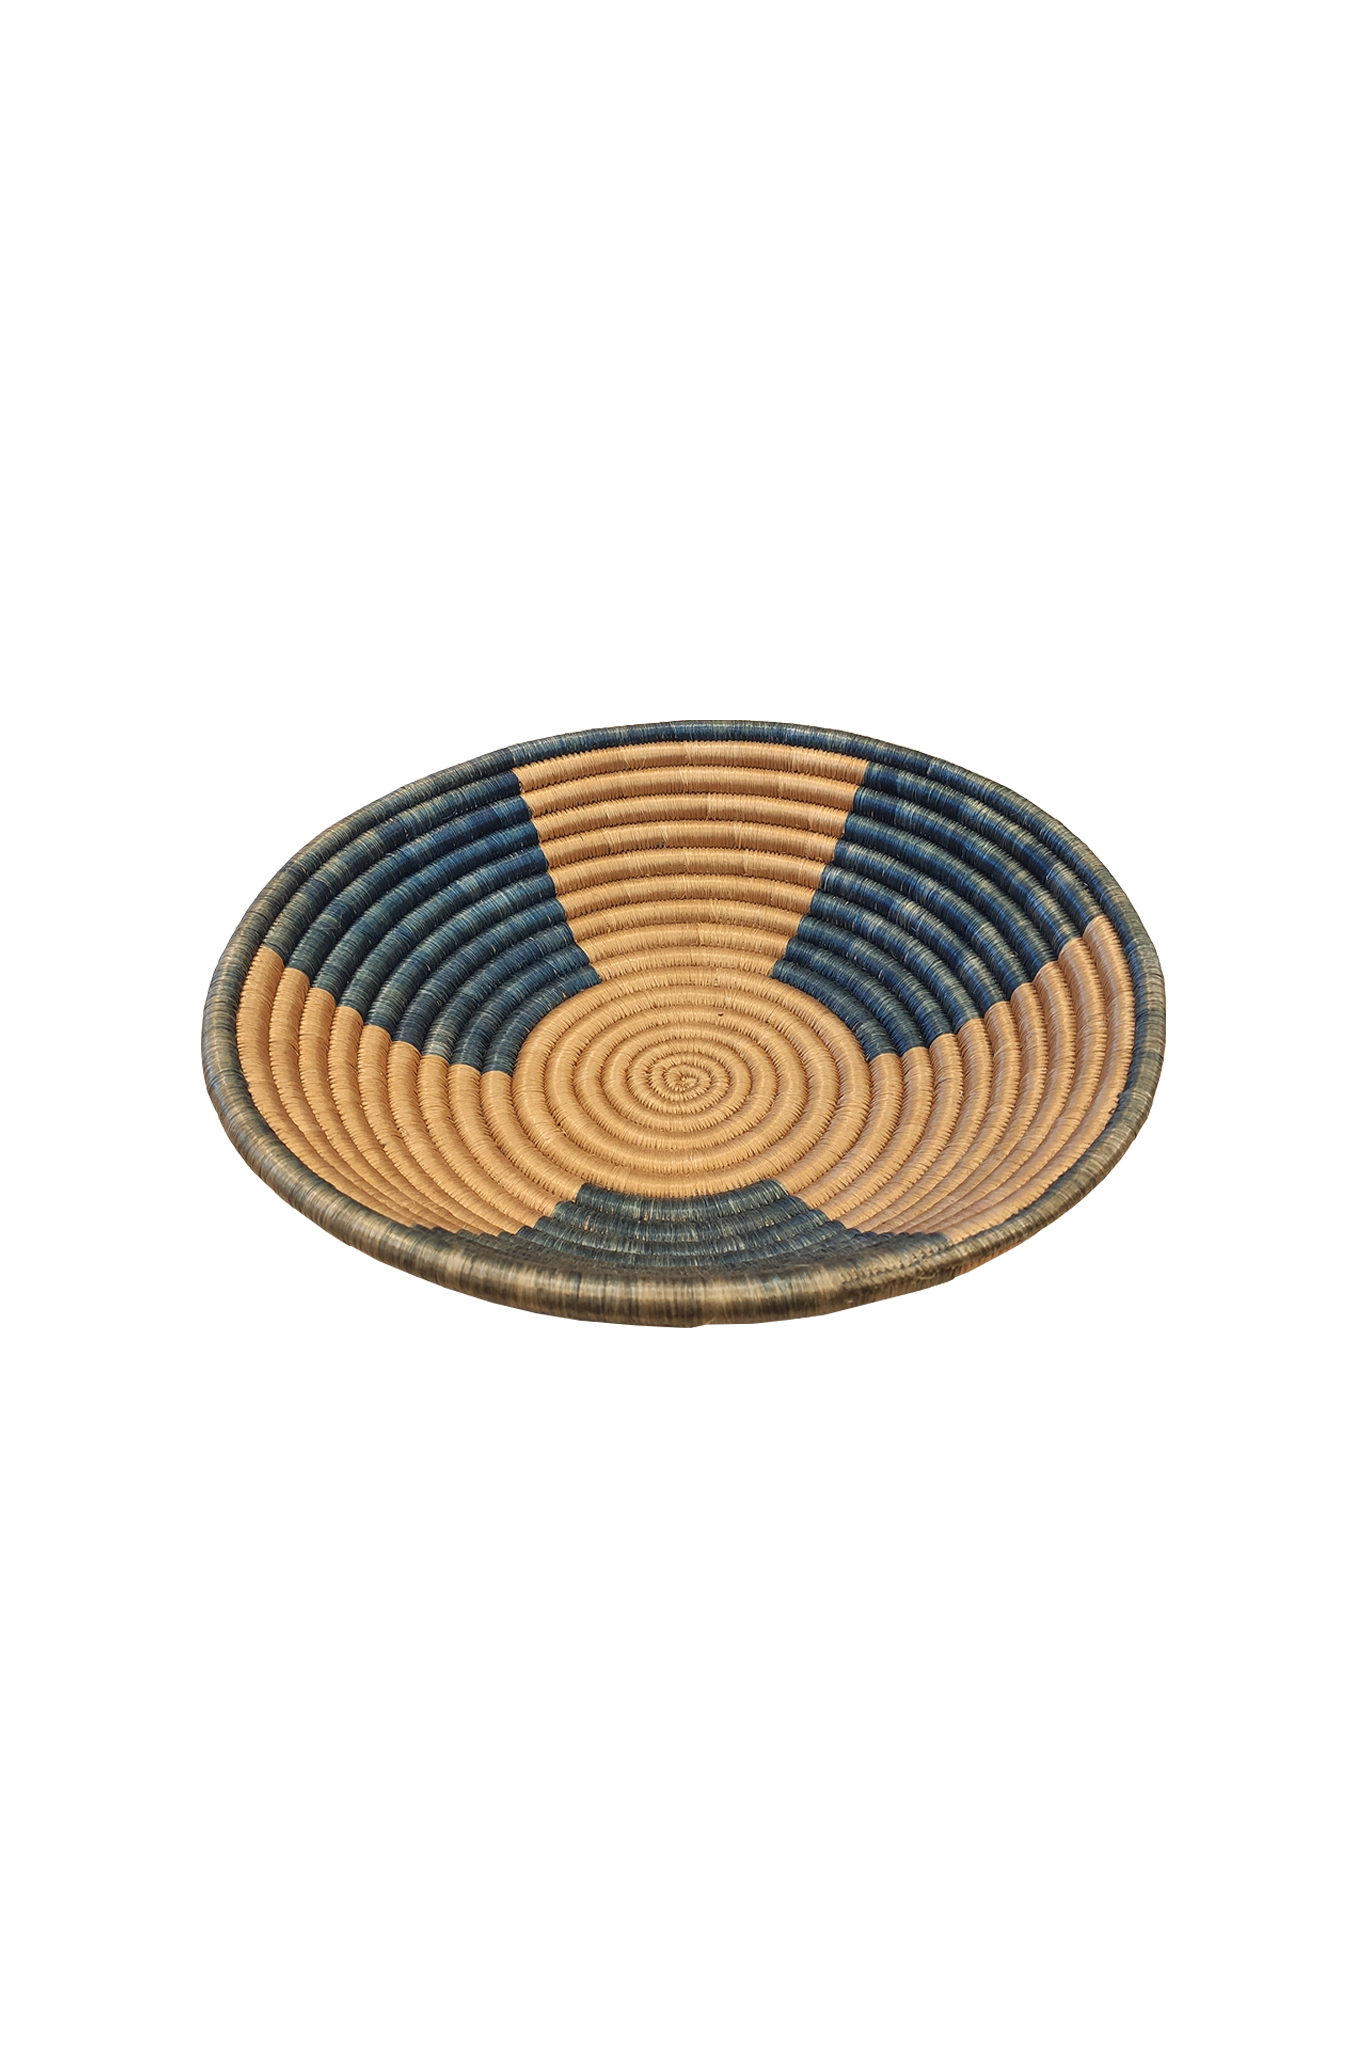 corbeille rwandaise de tradition, faite à la main